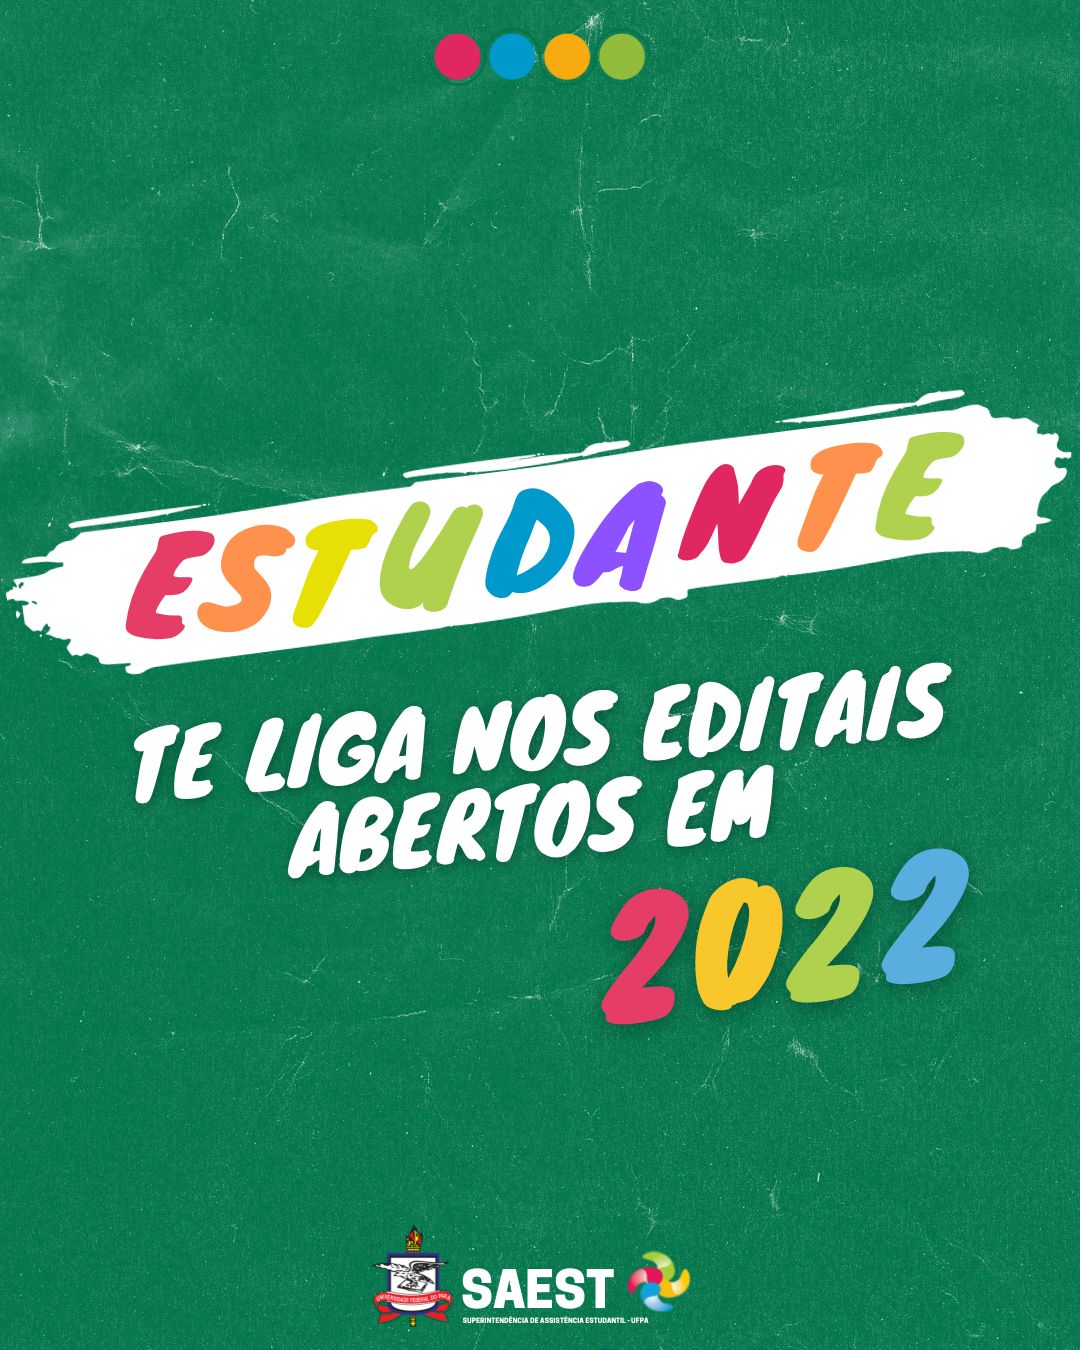 Sobre um fundo verde escuro, escrito em letras coloridas: Estudante. Segue em letras brancas: Te liga nos editais abertos em 2022. Na base, o logo da SAESt/UFPA e o Brasão da UFPA.